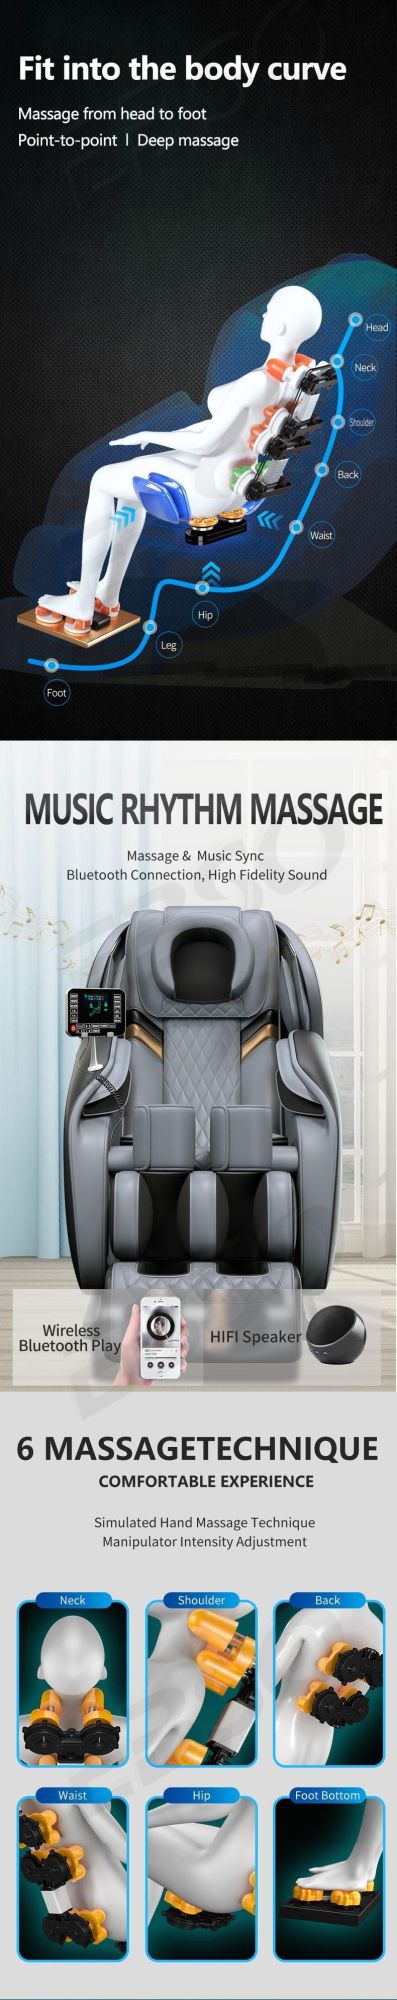 Massage Zero Gravity Massage Chair Full Body Modern Design Massage Chair Health